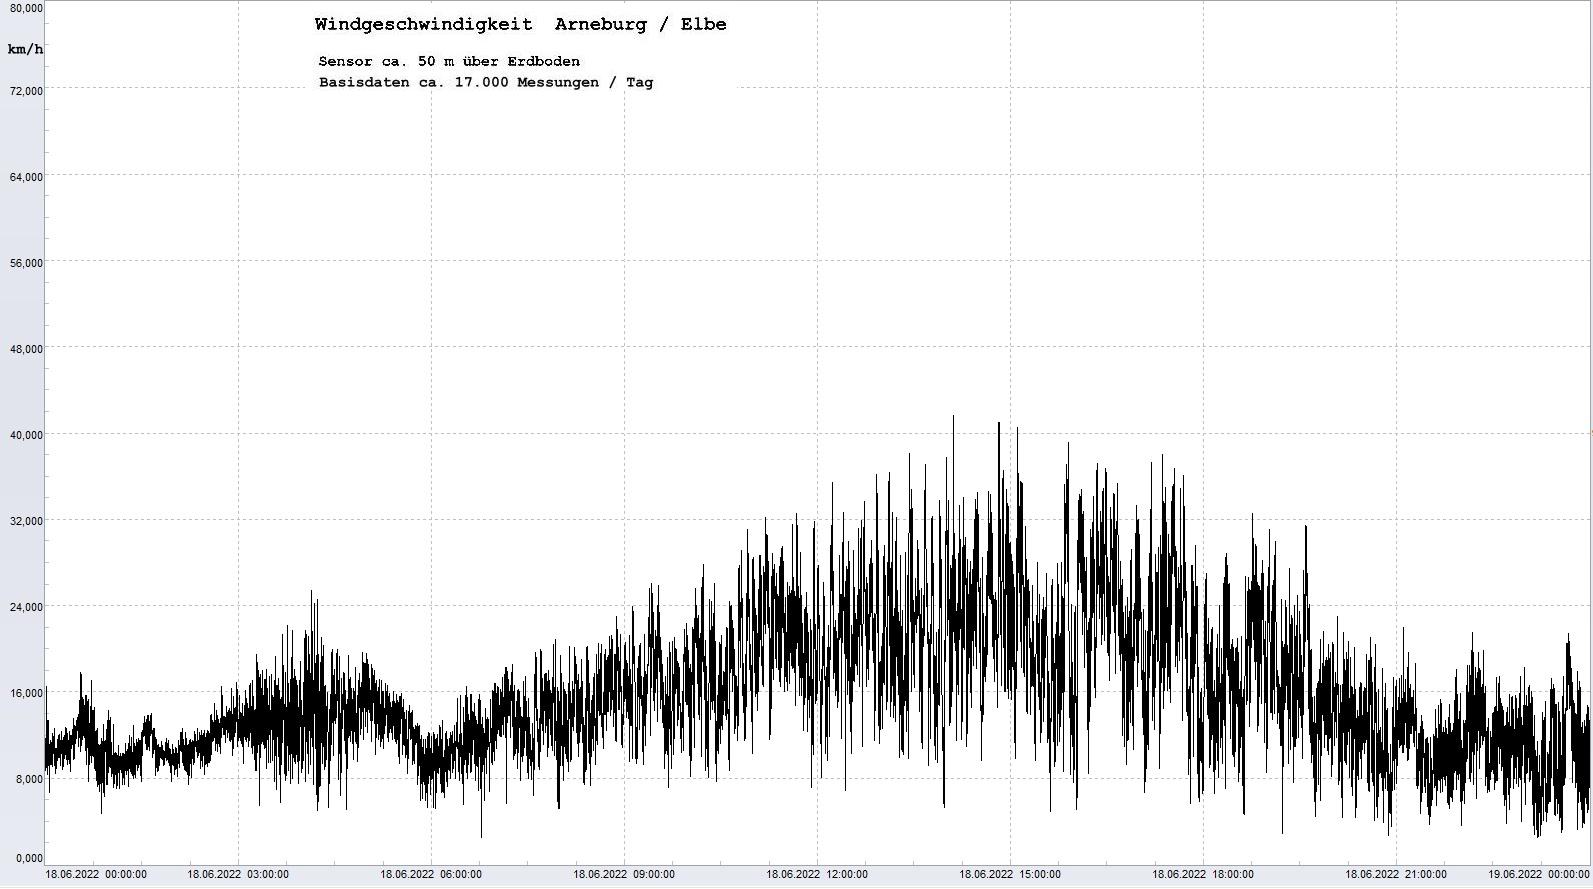 Arneburg Tages-Diagramm Winddaten, 18.06.2022
  Diagramm, Sensor auf Gebude, ca. 50 m ber Erdboden, Basis: 5s-Aufzeichnung